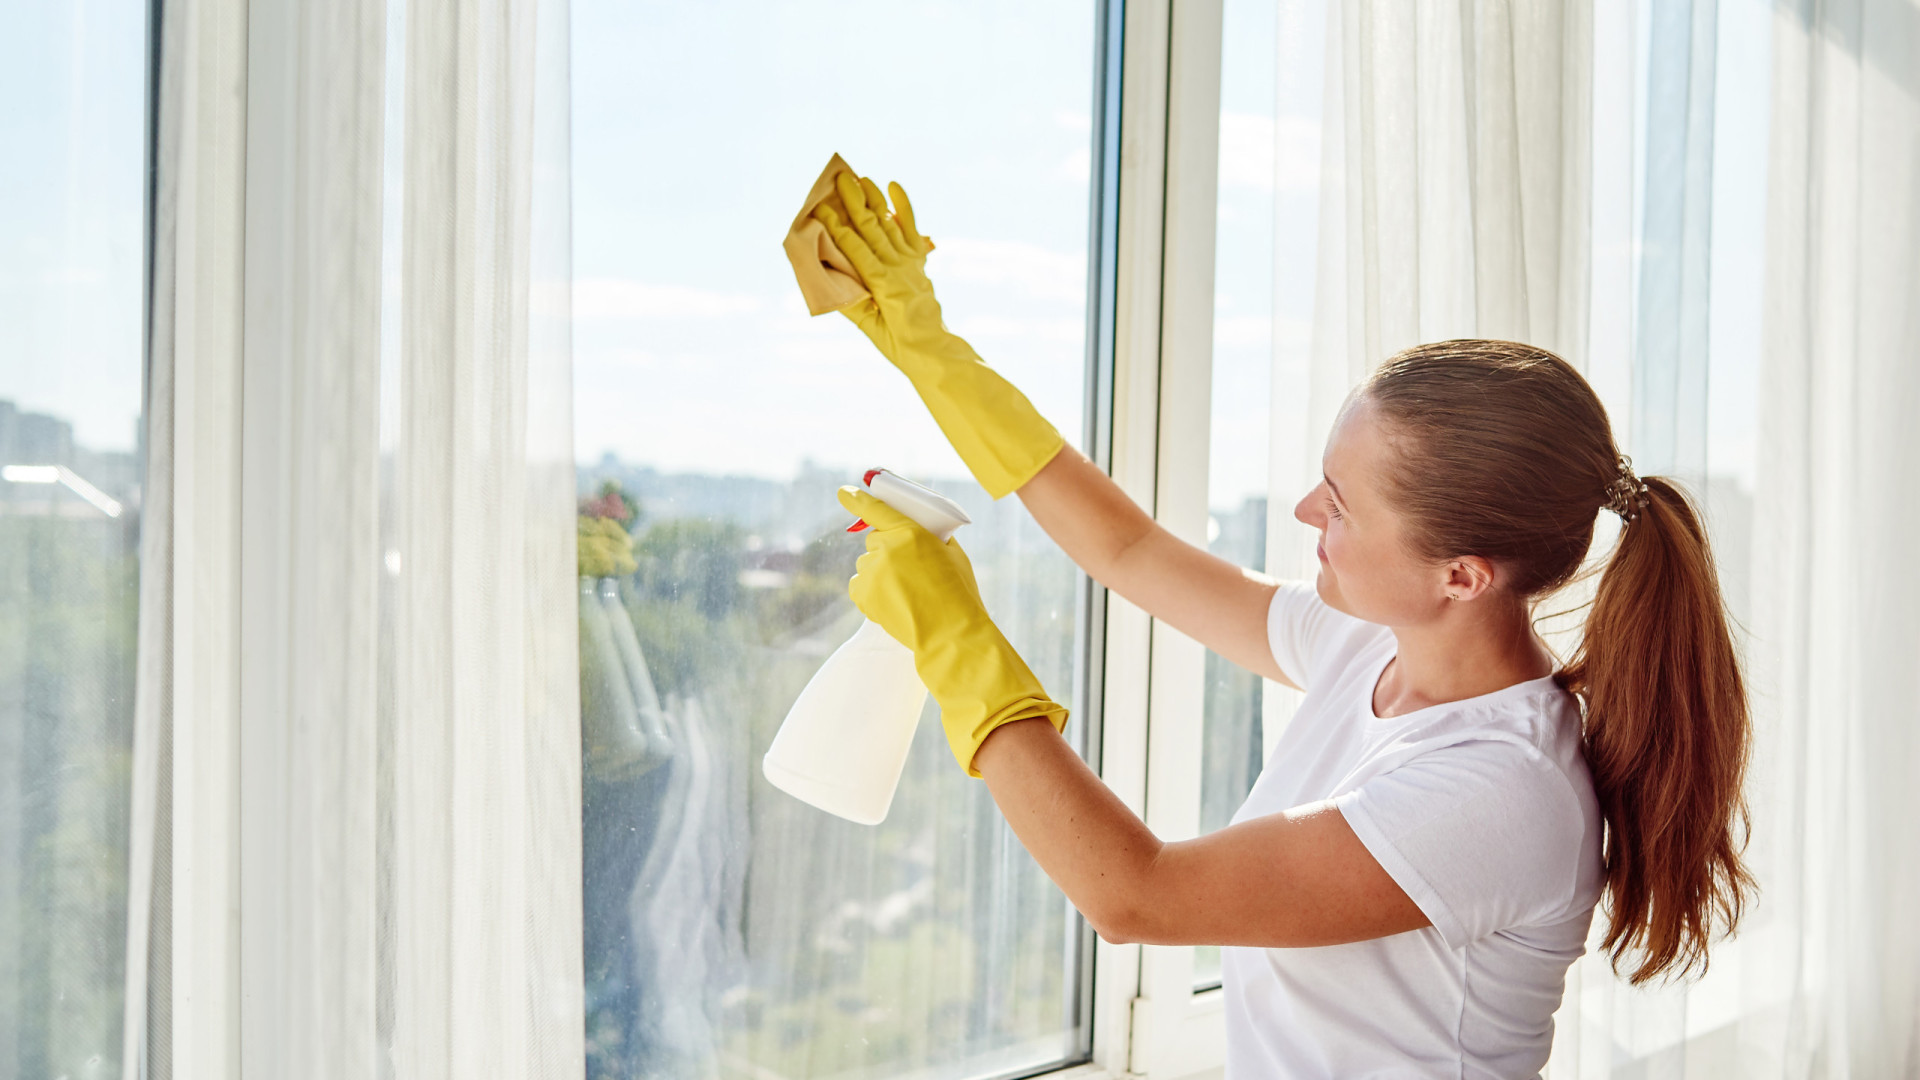 Com quatro ingredientes faz esta solução caseira para limpar as janelas